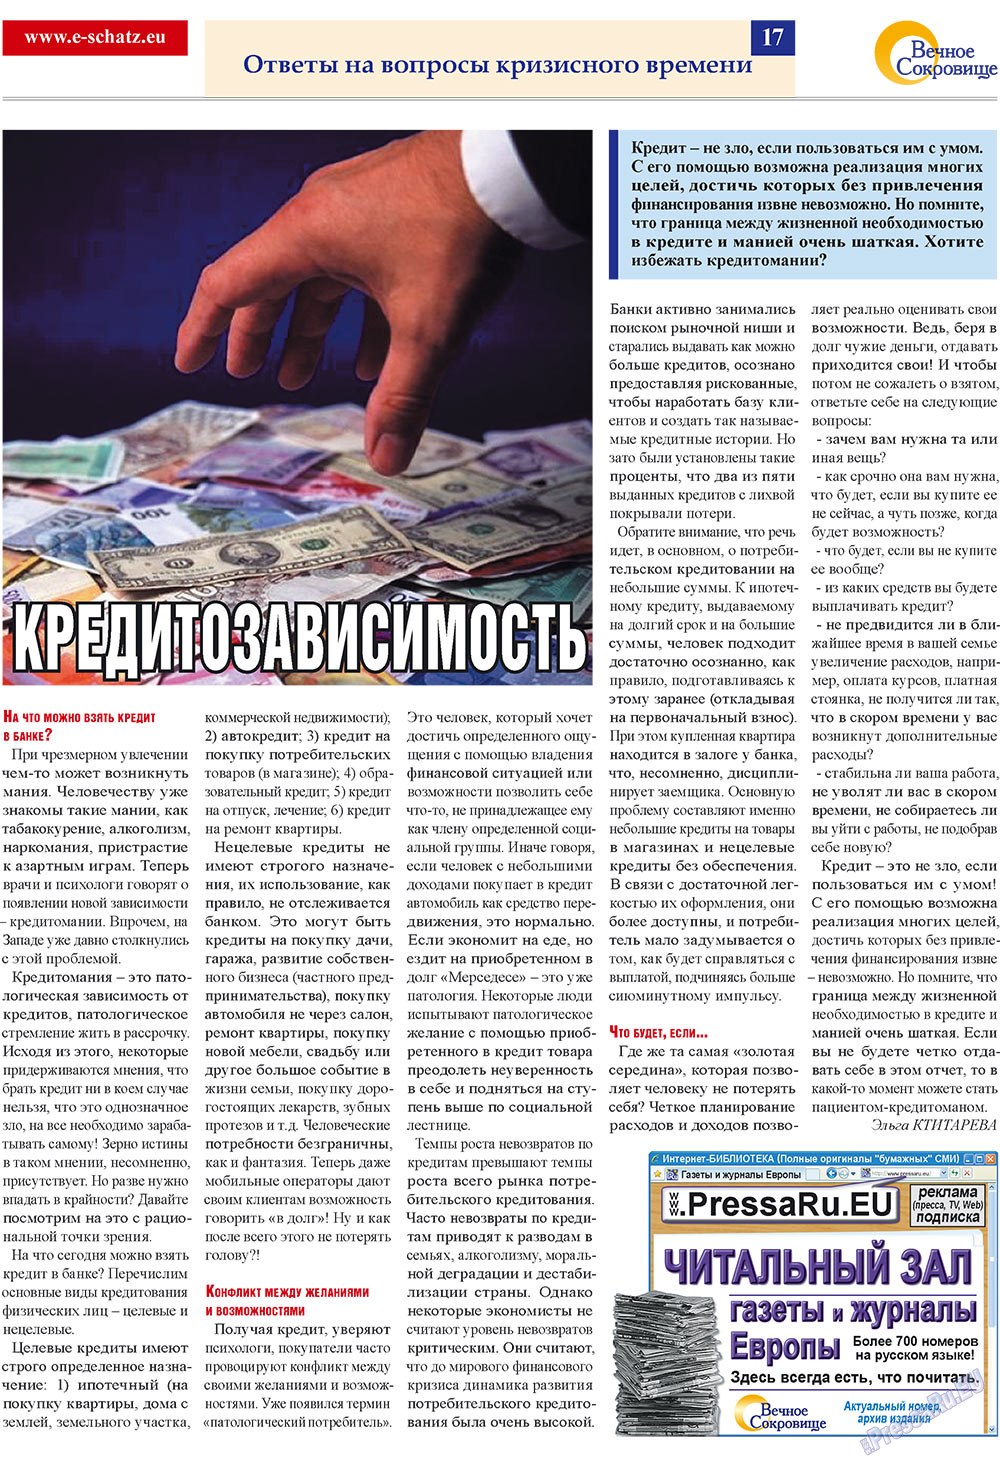 Вечное сокровище (газета). 2009 год, номер 4, стр. 17